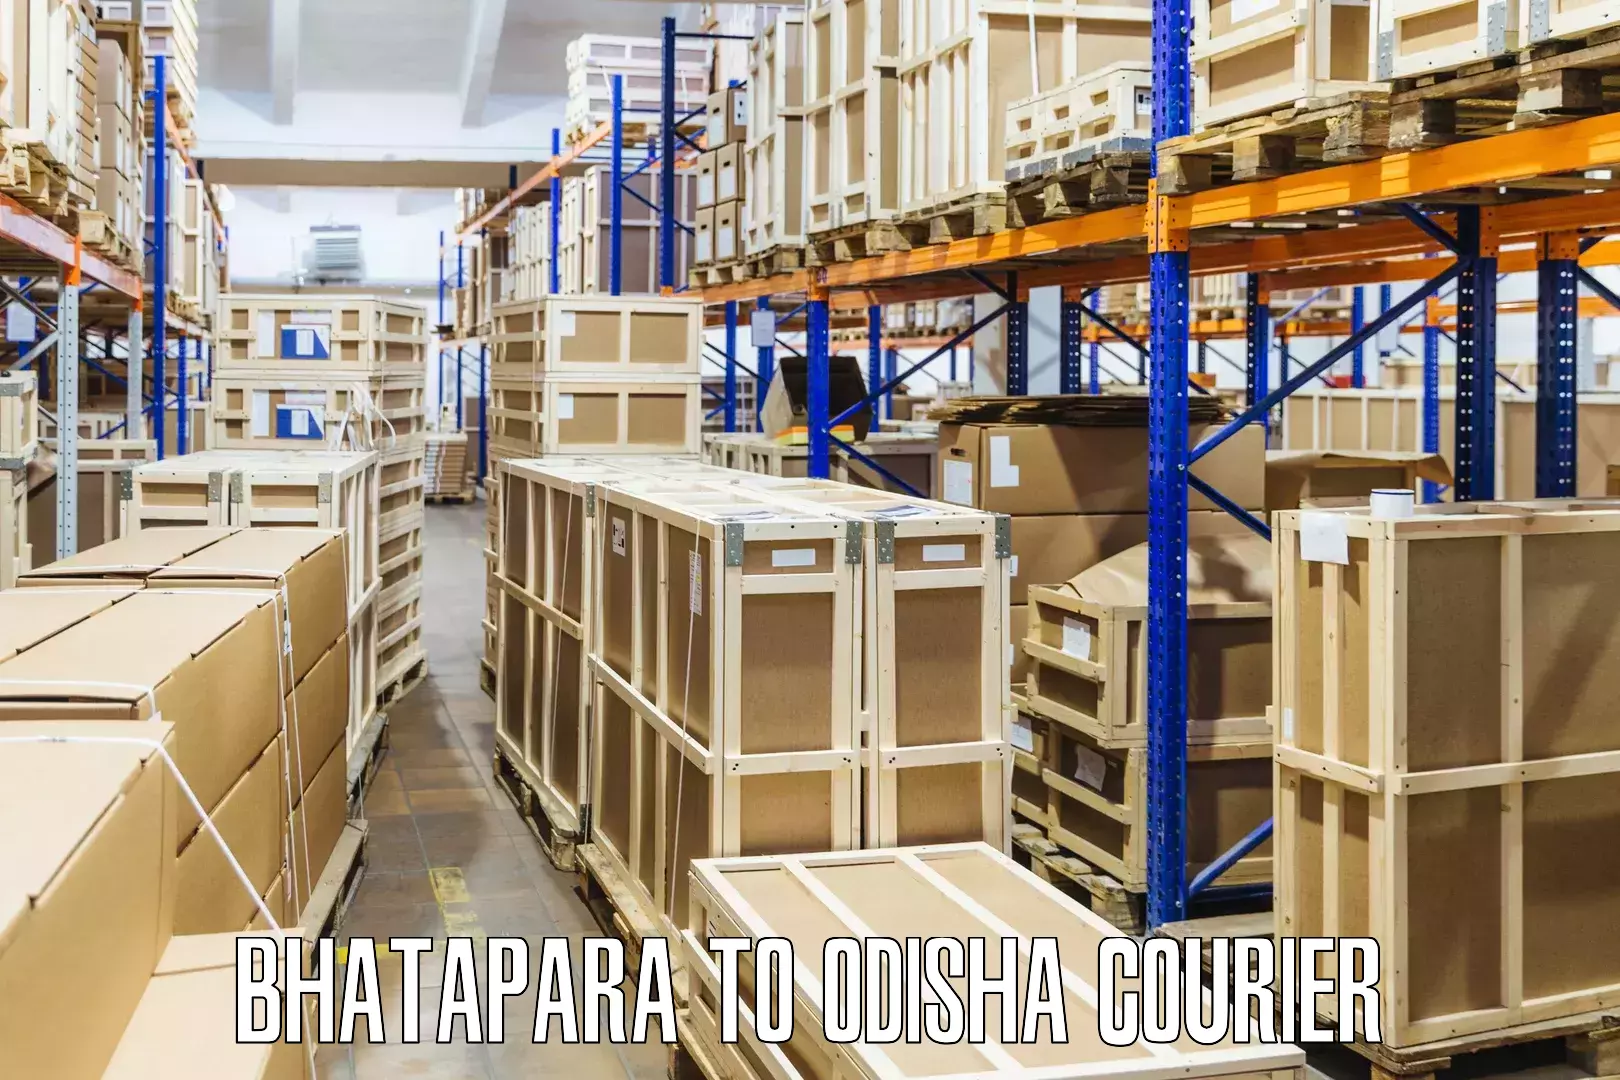 Comprehensive parcel tracking Bhatapara to Sohela